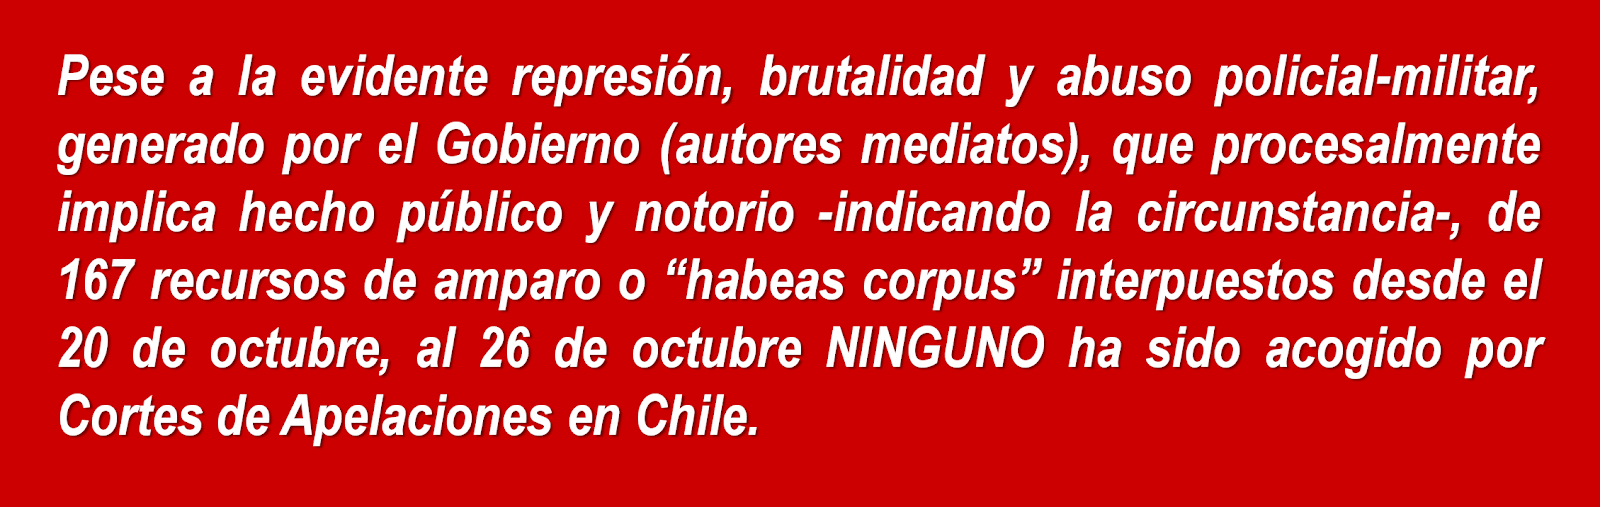 Justicia en Chile en octubre de 2019. Inutilidad del "Habeas Corpus".